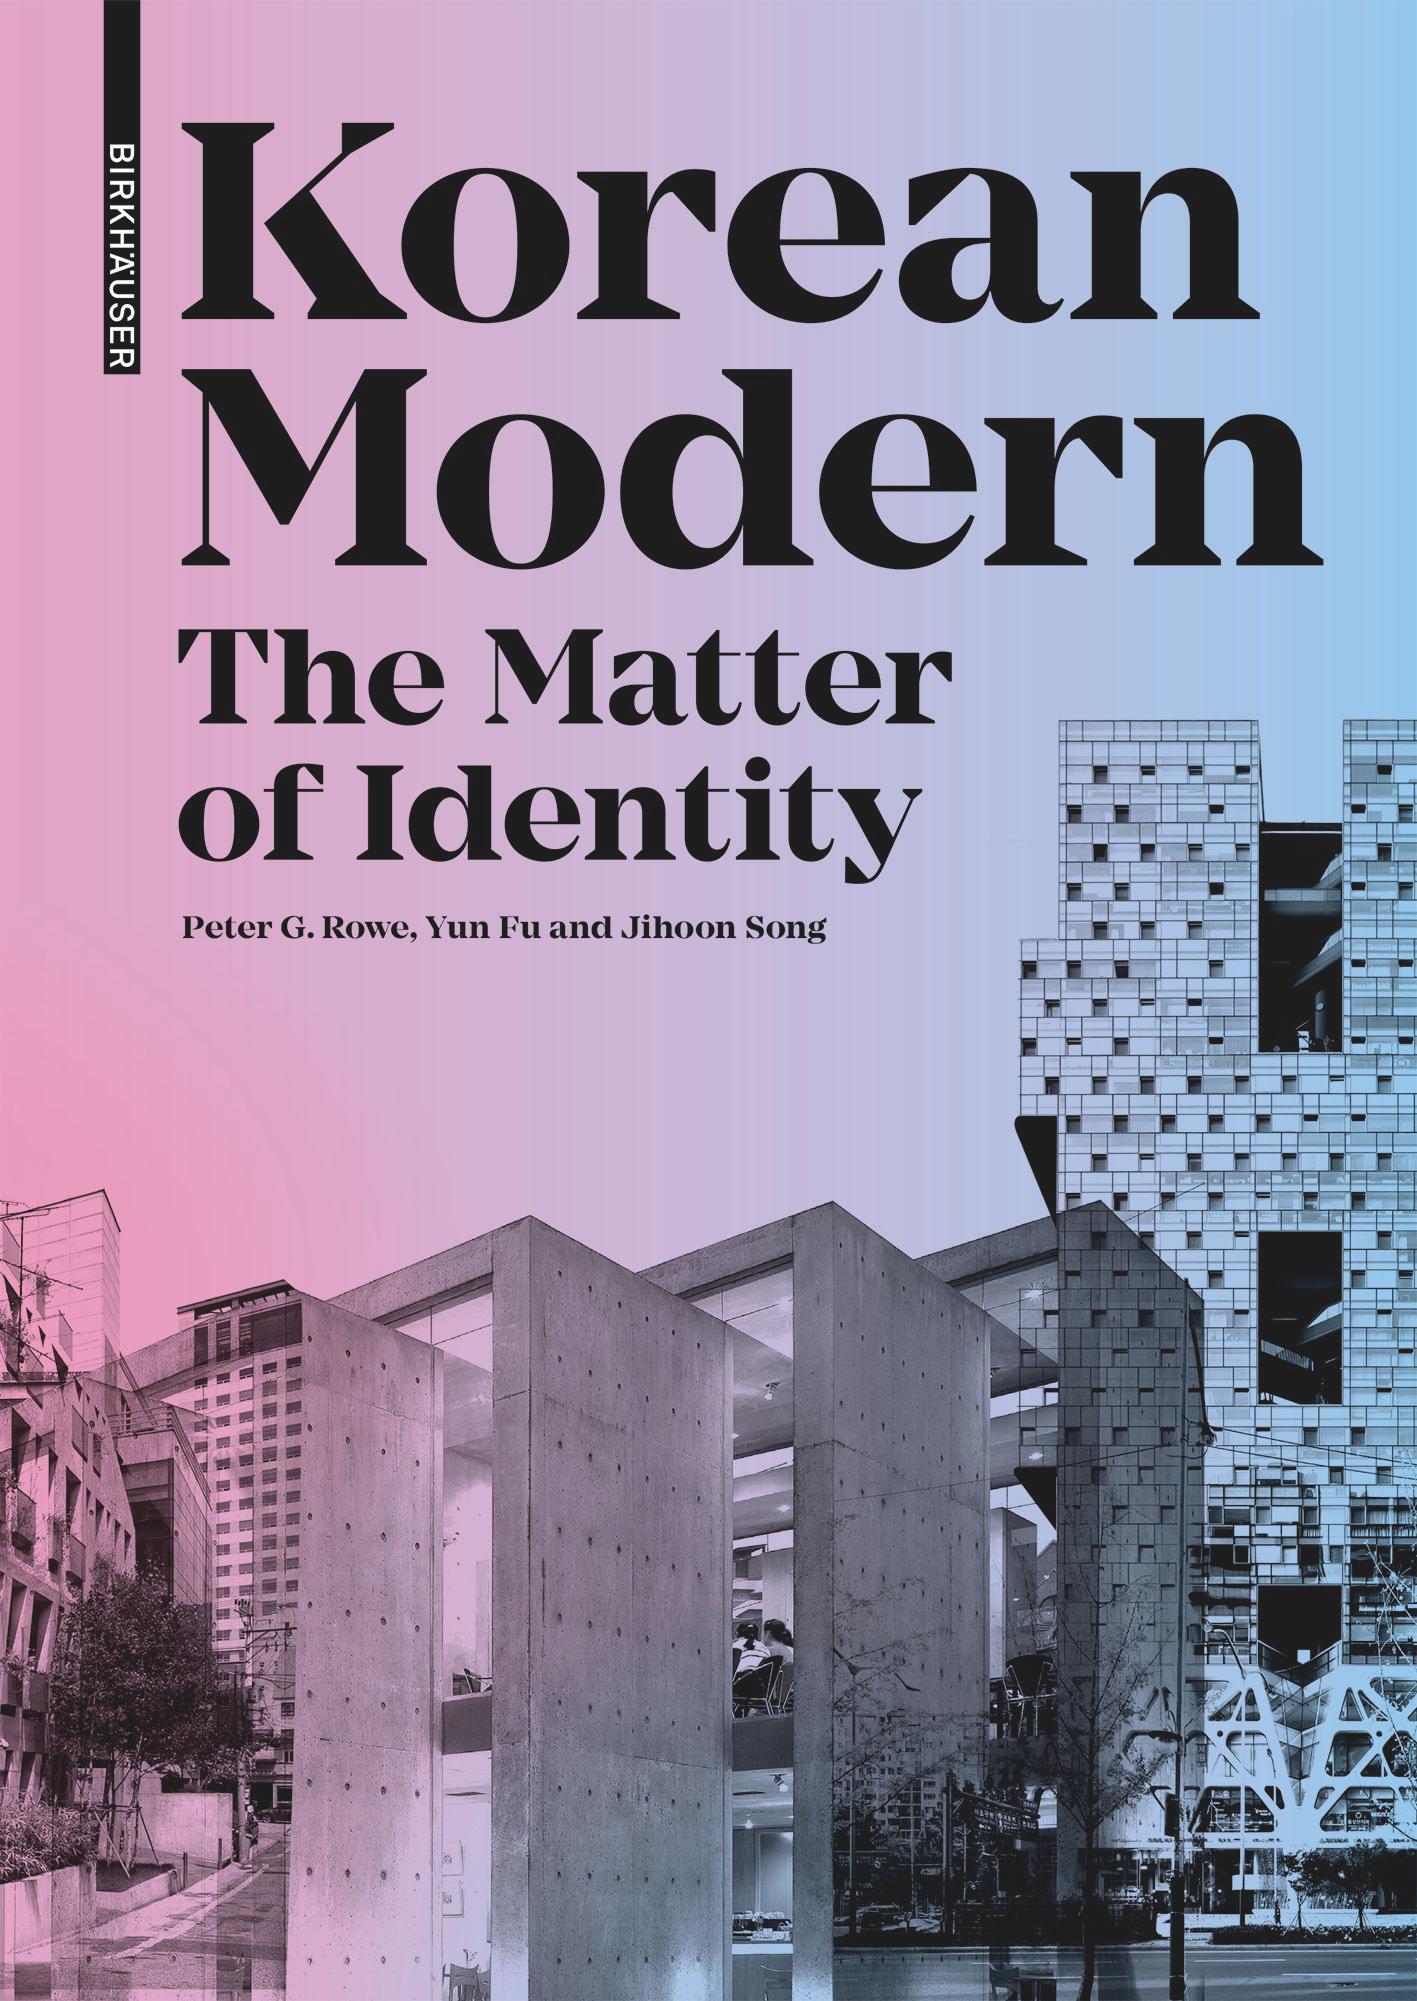 Korean Modern: The Matter of Identity's cover